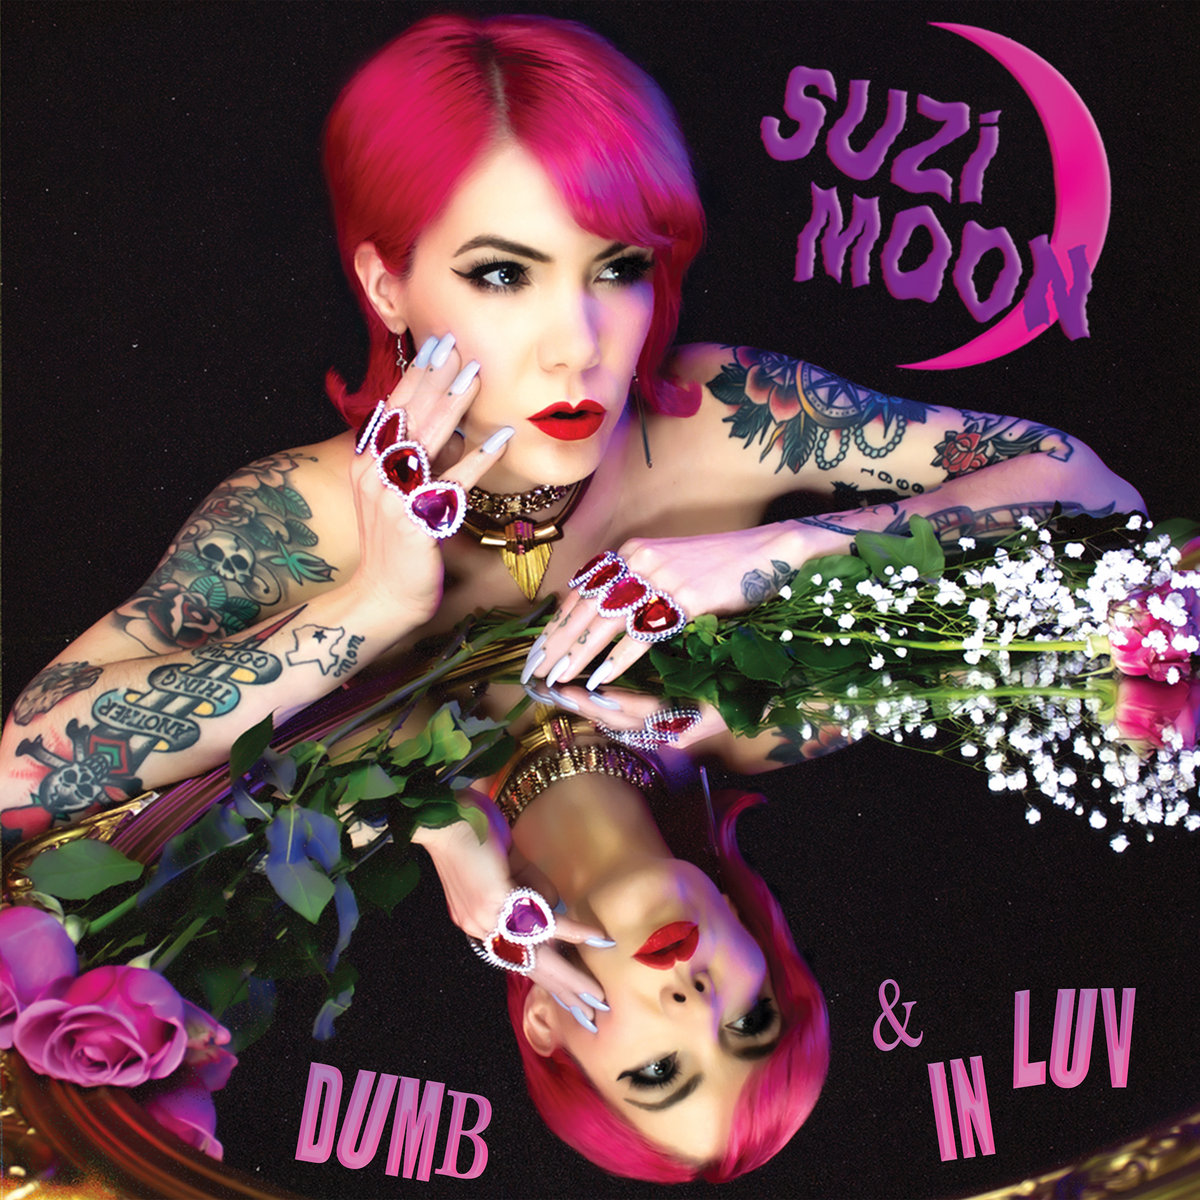 Dumb & In Luv | Suzi Moon